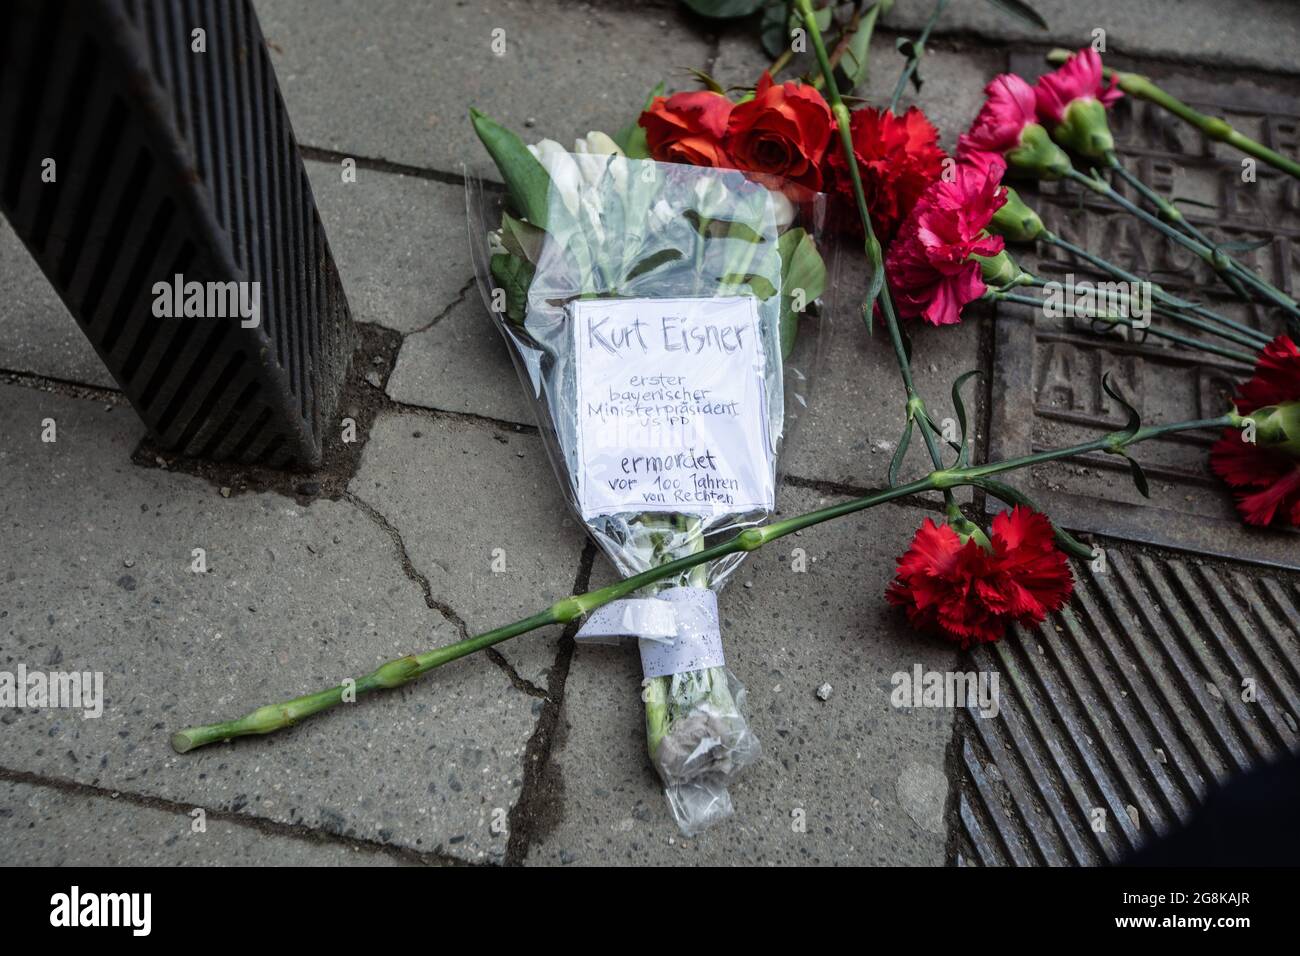 Einige Blumen auf dem Boden erinnern an Kurt Eisner, der von rechtsextremen Aktivisten getötet wurde. In München wurde zum 100. Jahrestag (21.2.2019) der Tötung von Kurt Eisner, dem Gründer des Freistaates Bayern und dem ersten Ministerpräsidenten Bayerns, an einige Aktivisten gedacht. (Foto von Alexander Pohl/Sipa USA) Stockfoto